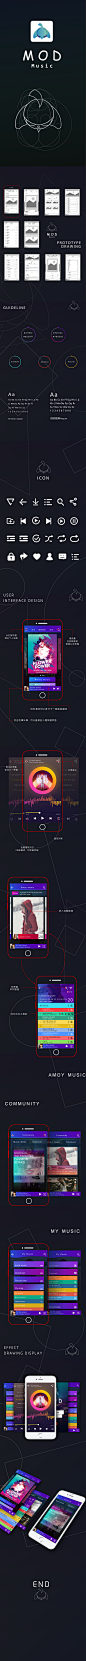 音乐 UI 设计 视觉  瀑布流